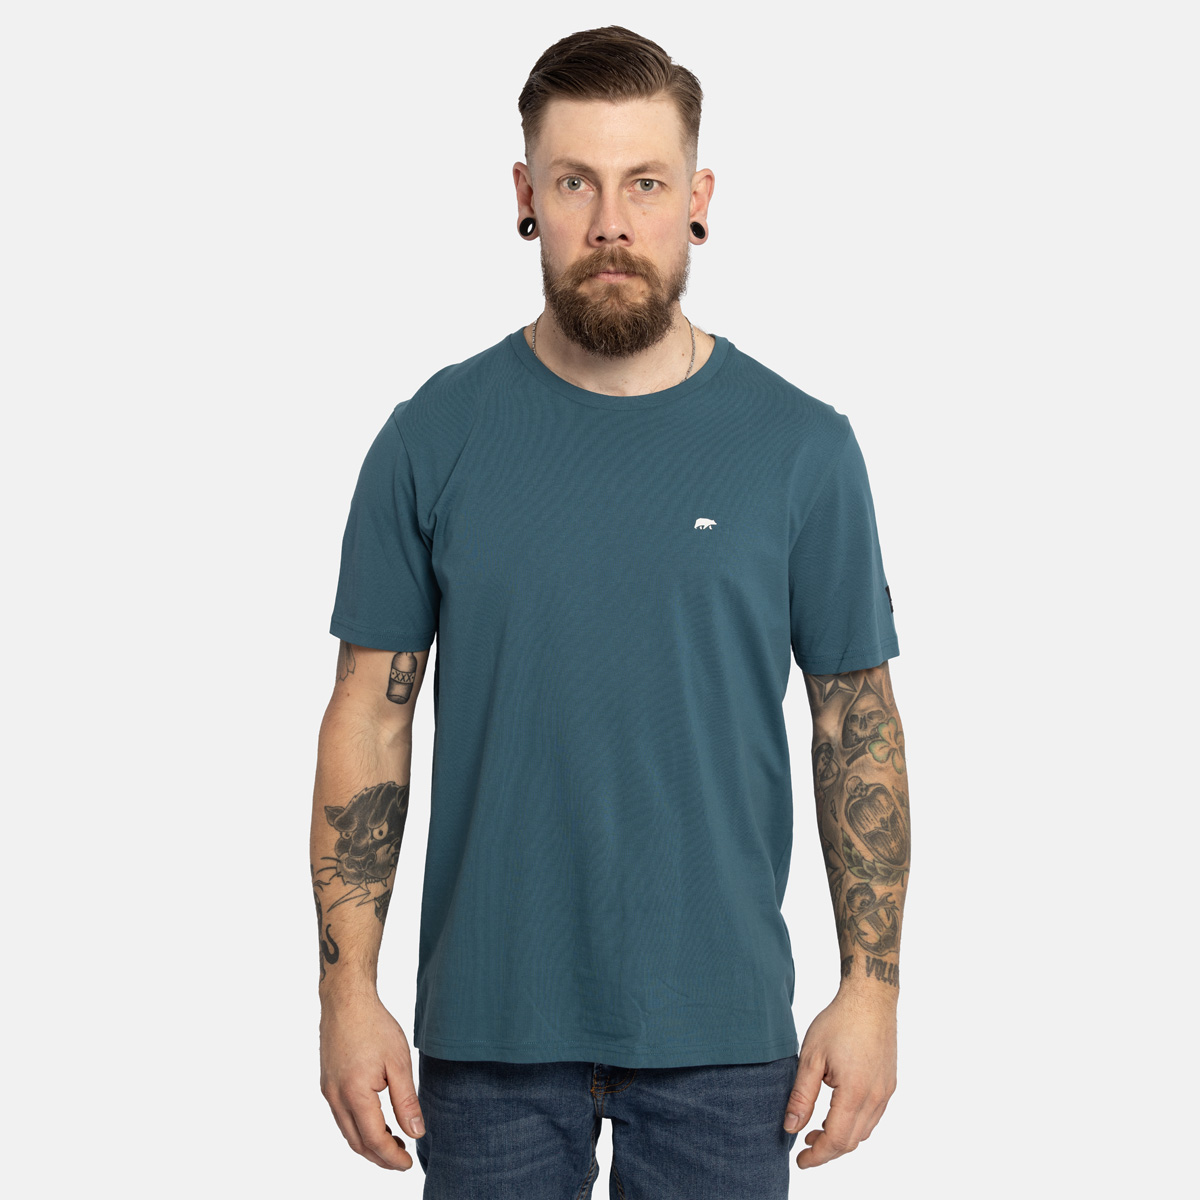 FORSBERG T-Shirt mit kleinem Gummi-Patch - 3